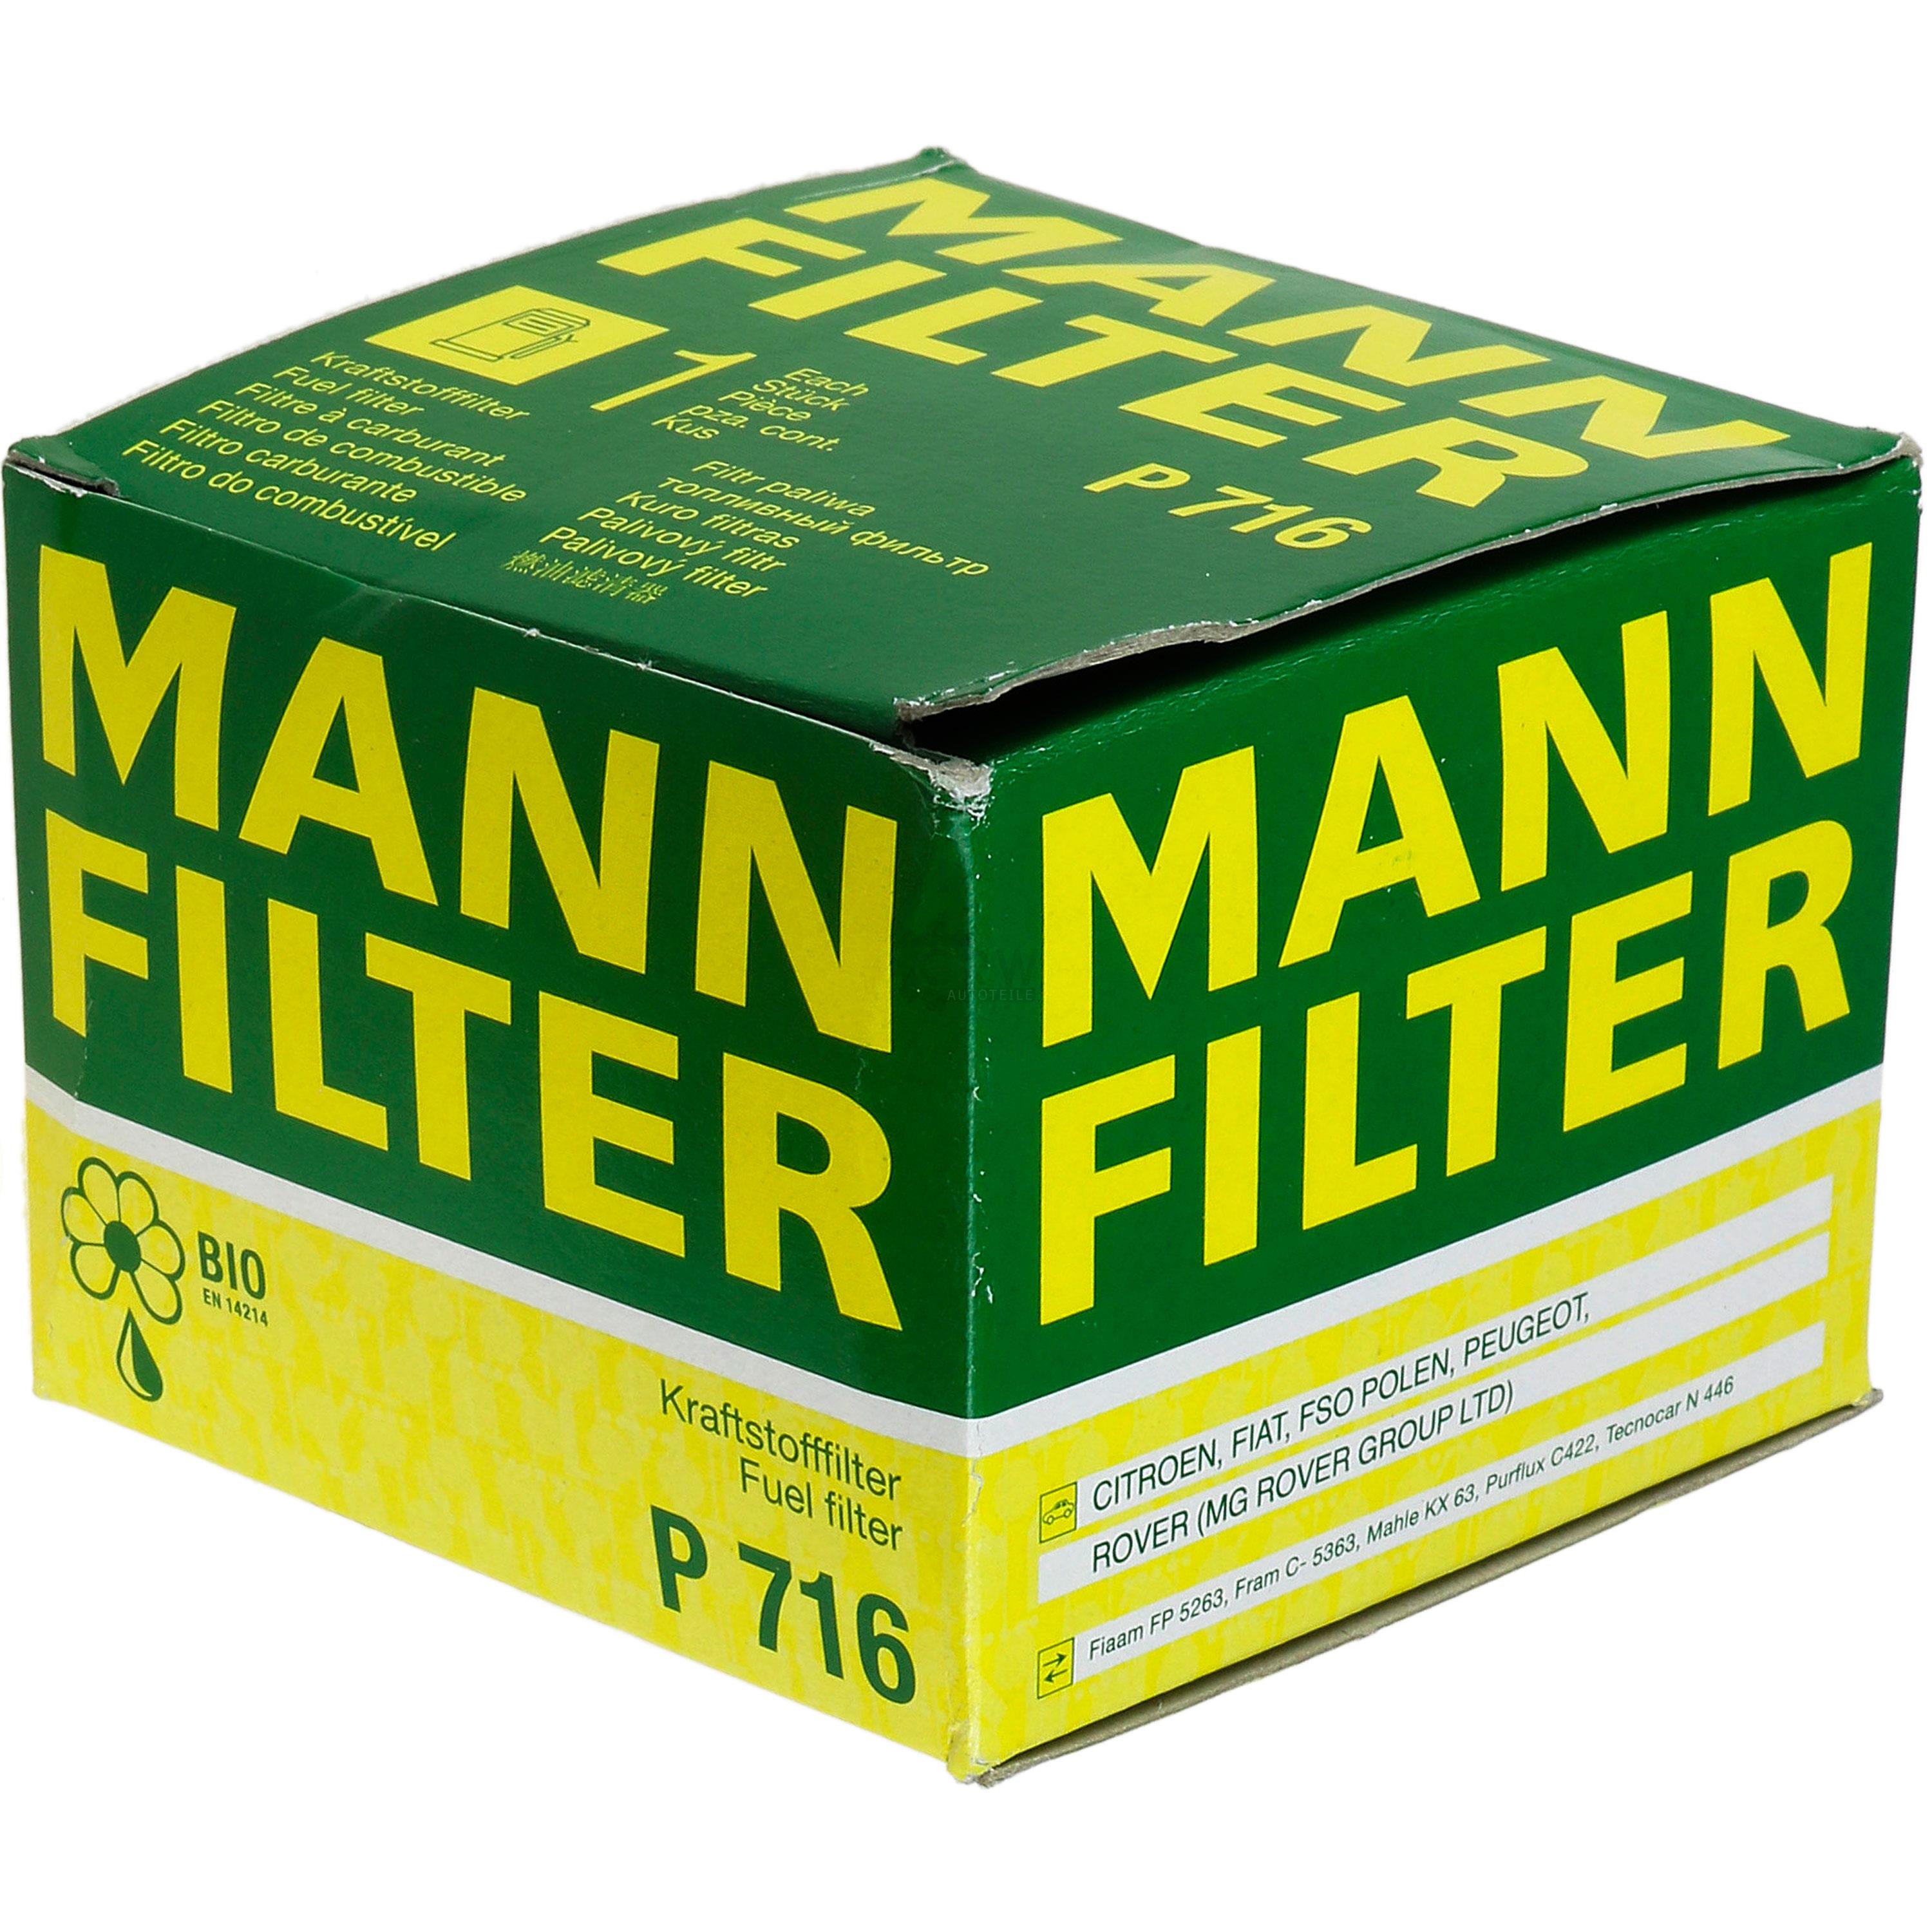 MANN-FILTER Kraftstofffilter P 716 Fuel Filter